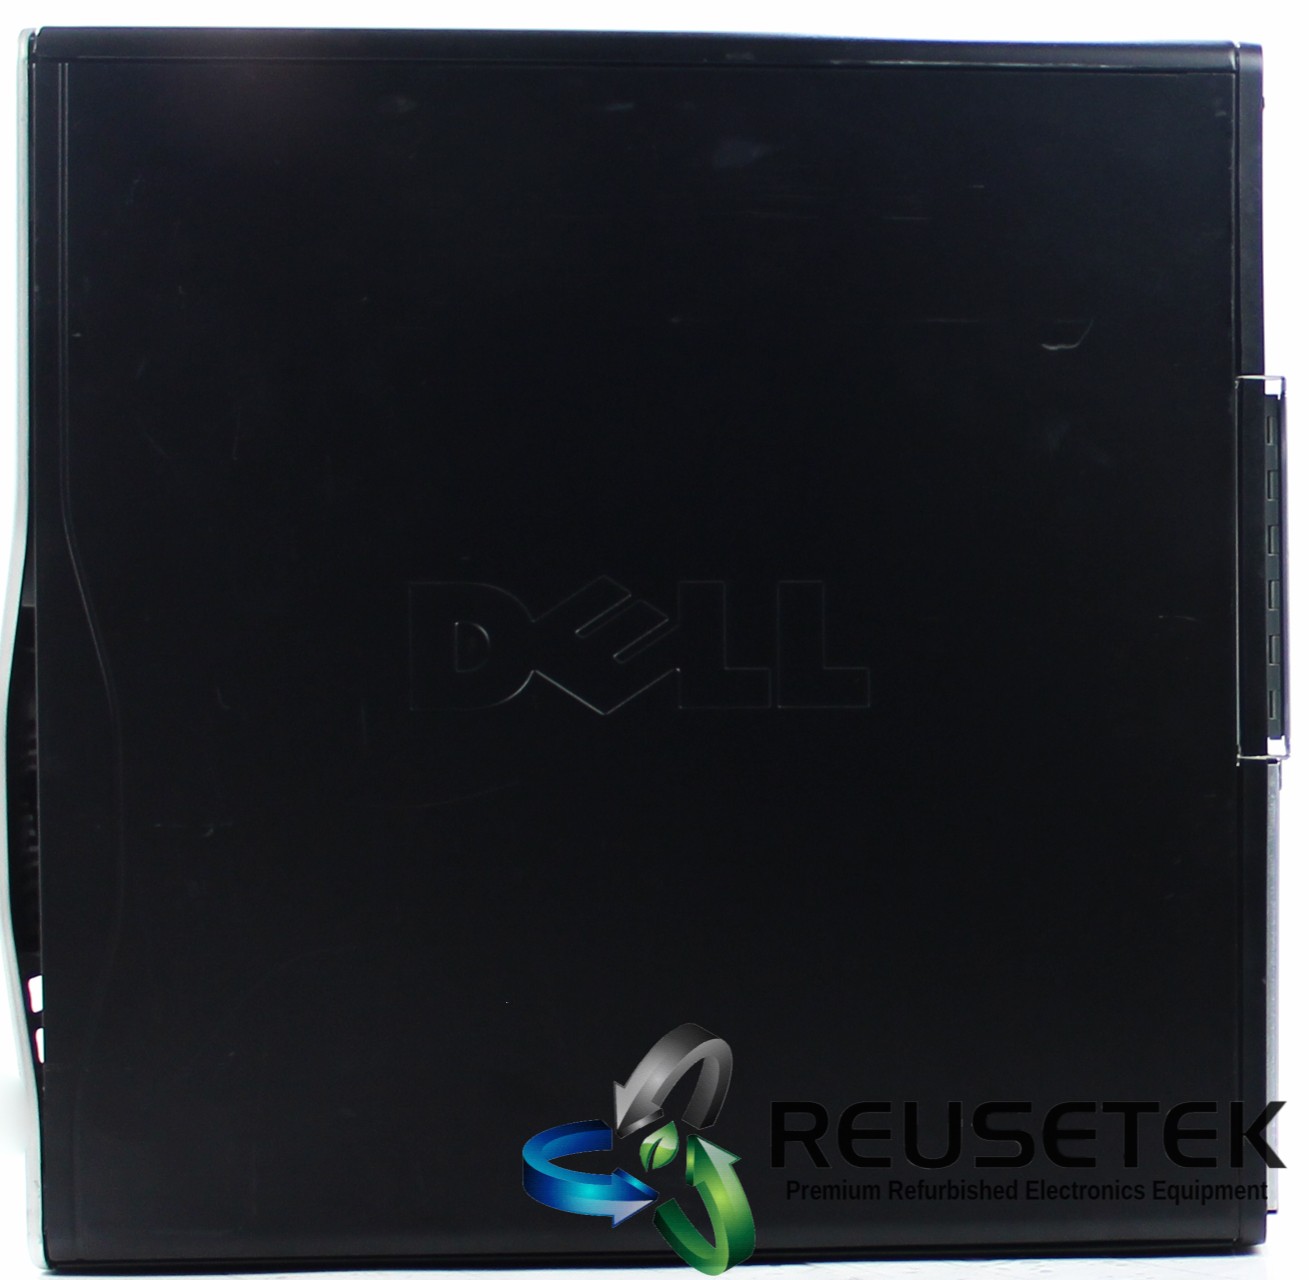 CDH5152-Dell Precision T3500 Workstation Desktop PC w/Xeon W3530 Processor-image